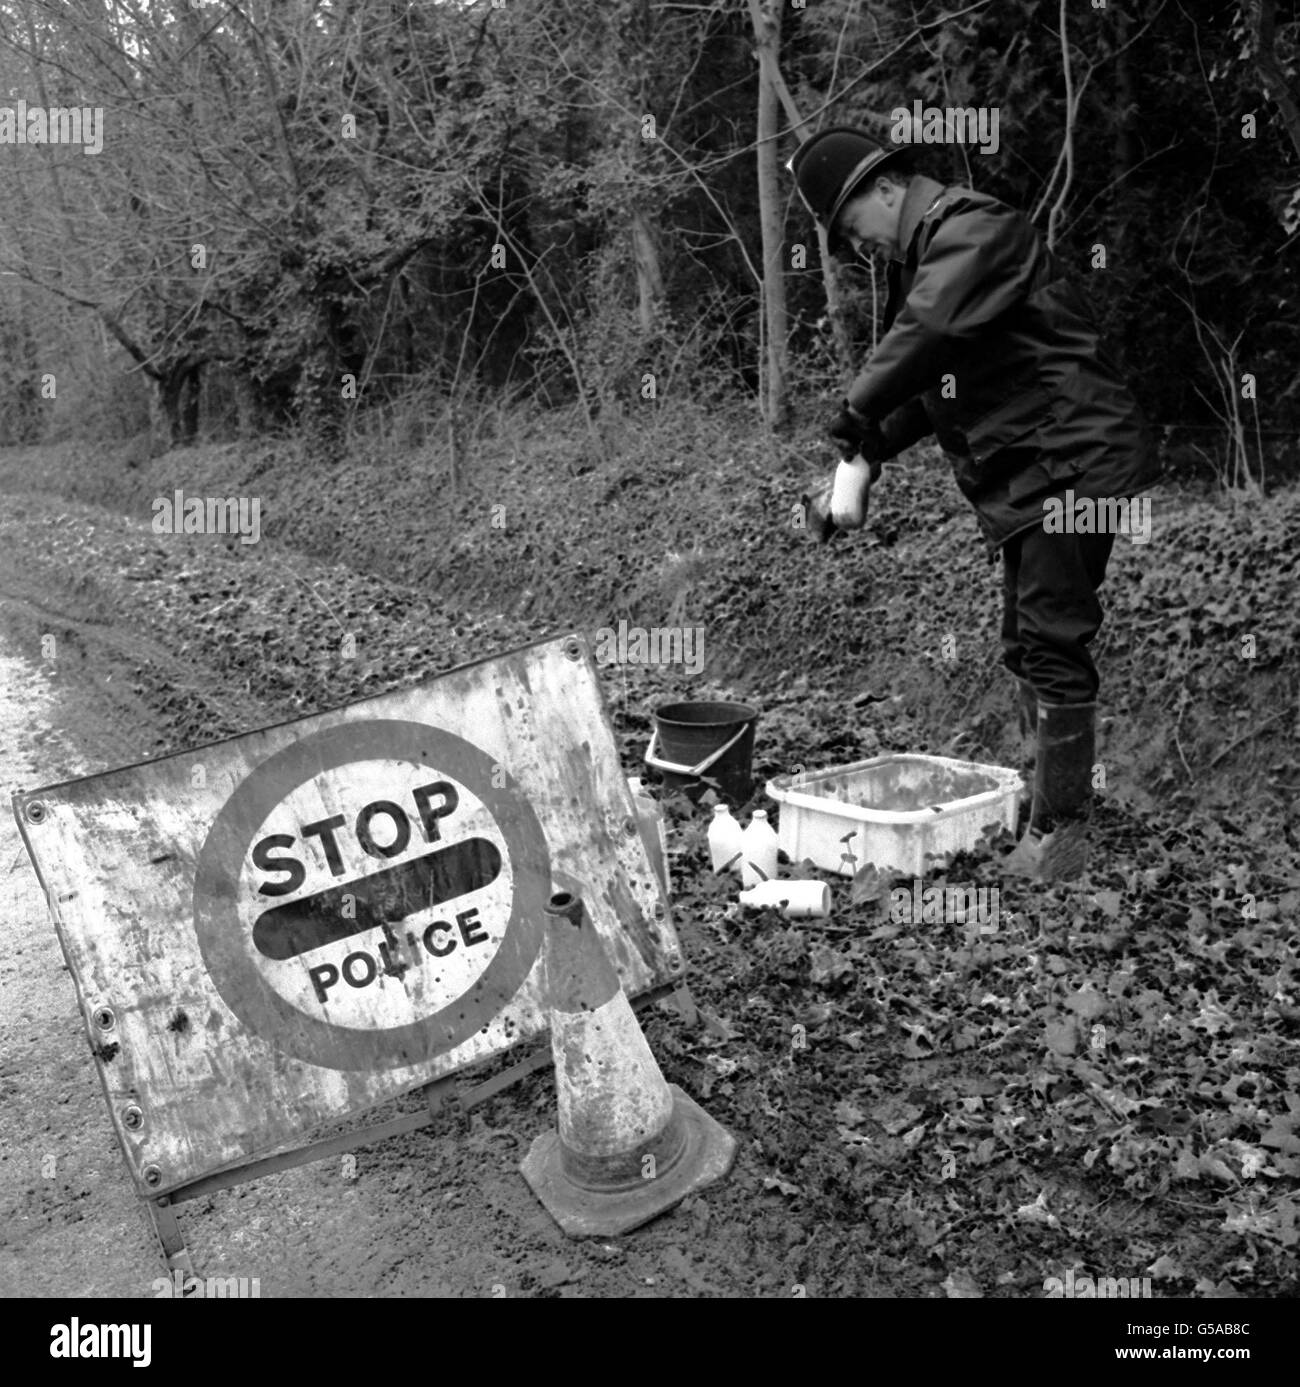 Un focolaio di afta epizootica è stato confermato il 21/03/1981 in una fattoria vicino a Yarmouth, Isola di Wight. Un poliziotto, che custodisce la zona, disinfetta la consegna giornaliera di latte in bottiglia destinato alle aziende agricole vicine. Foto Stock